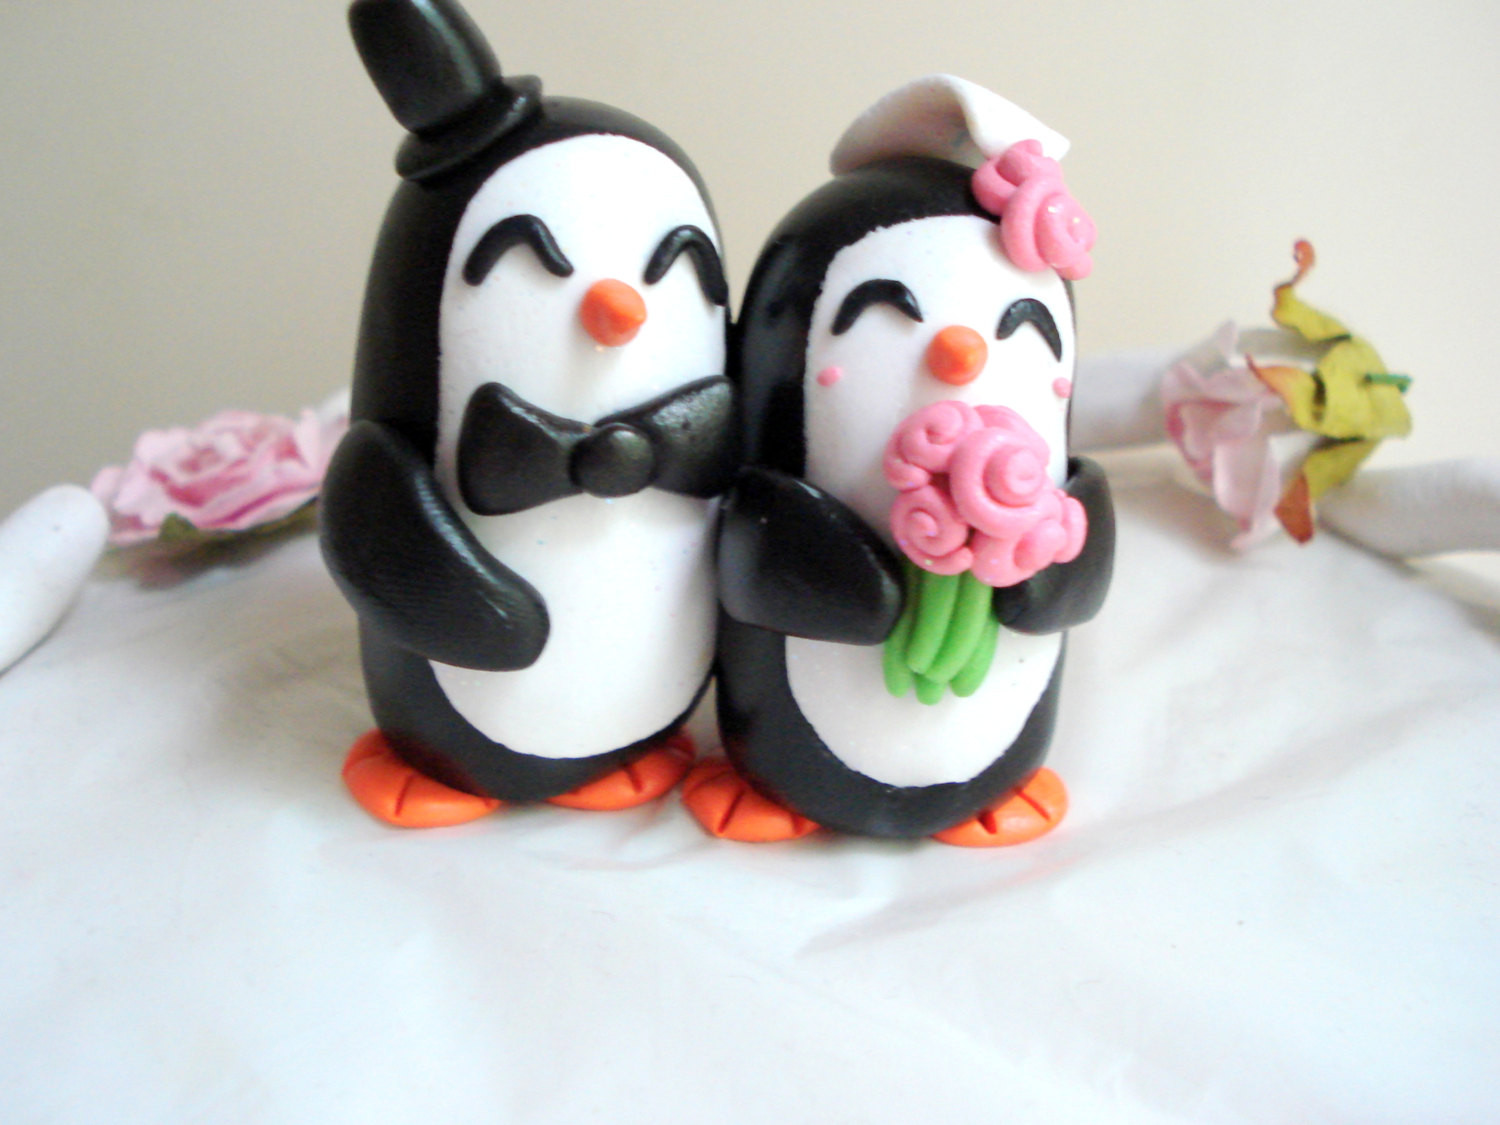 Penguin Wedding Cake Topper
 Penguin Wedding Cake Topper Penguin Cake Topper by